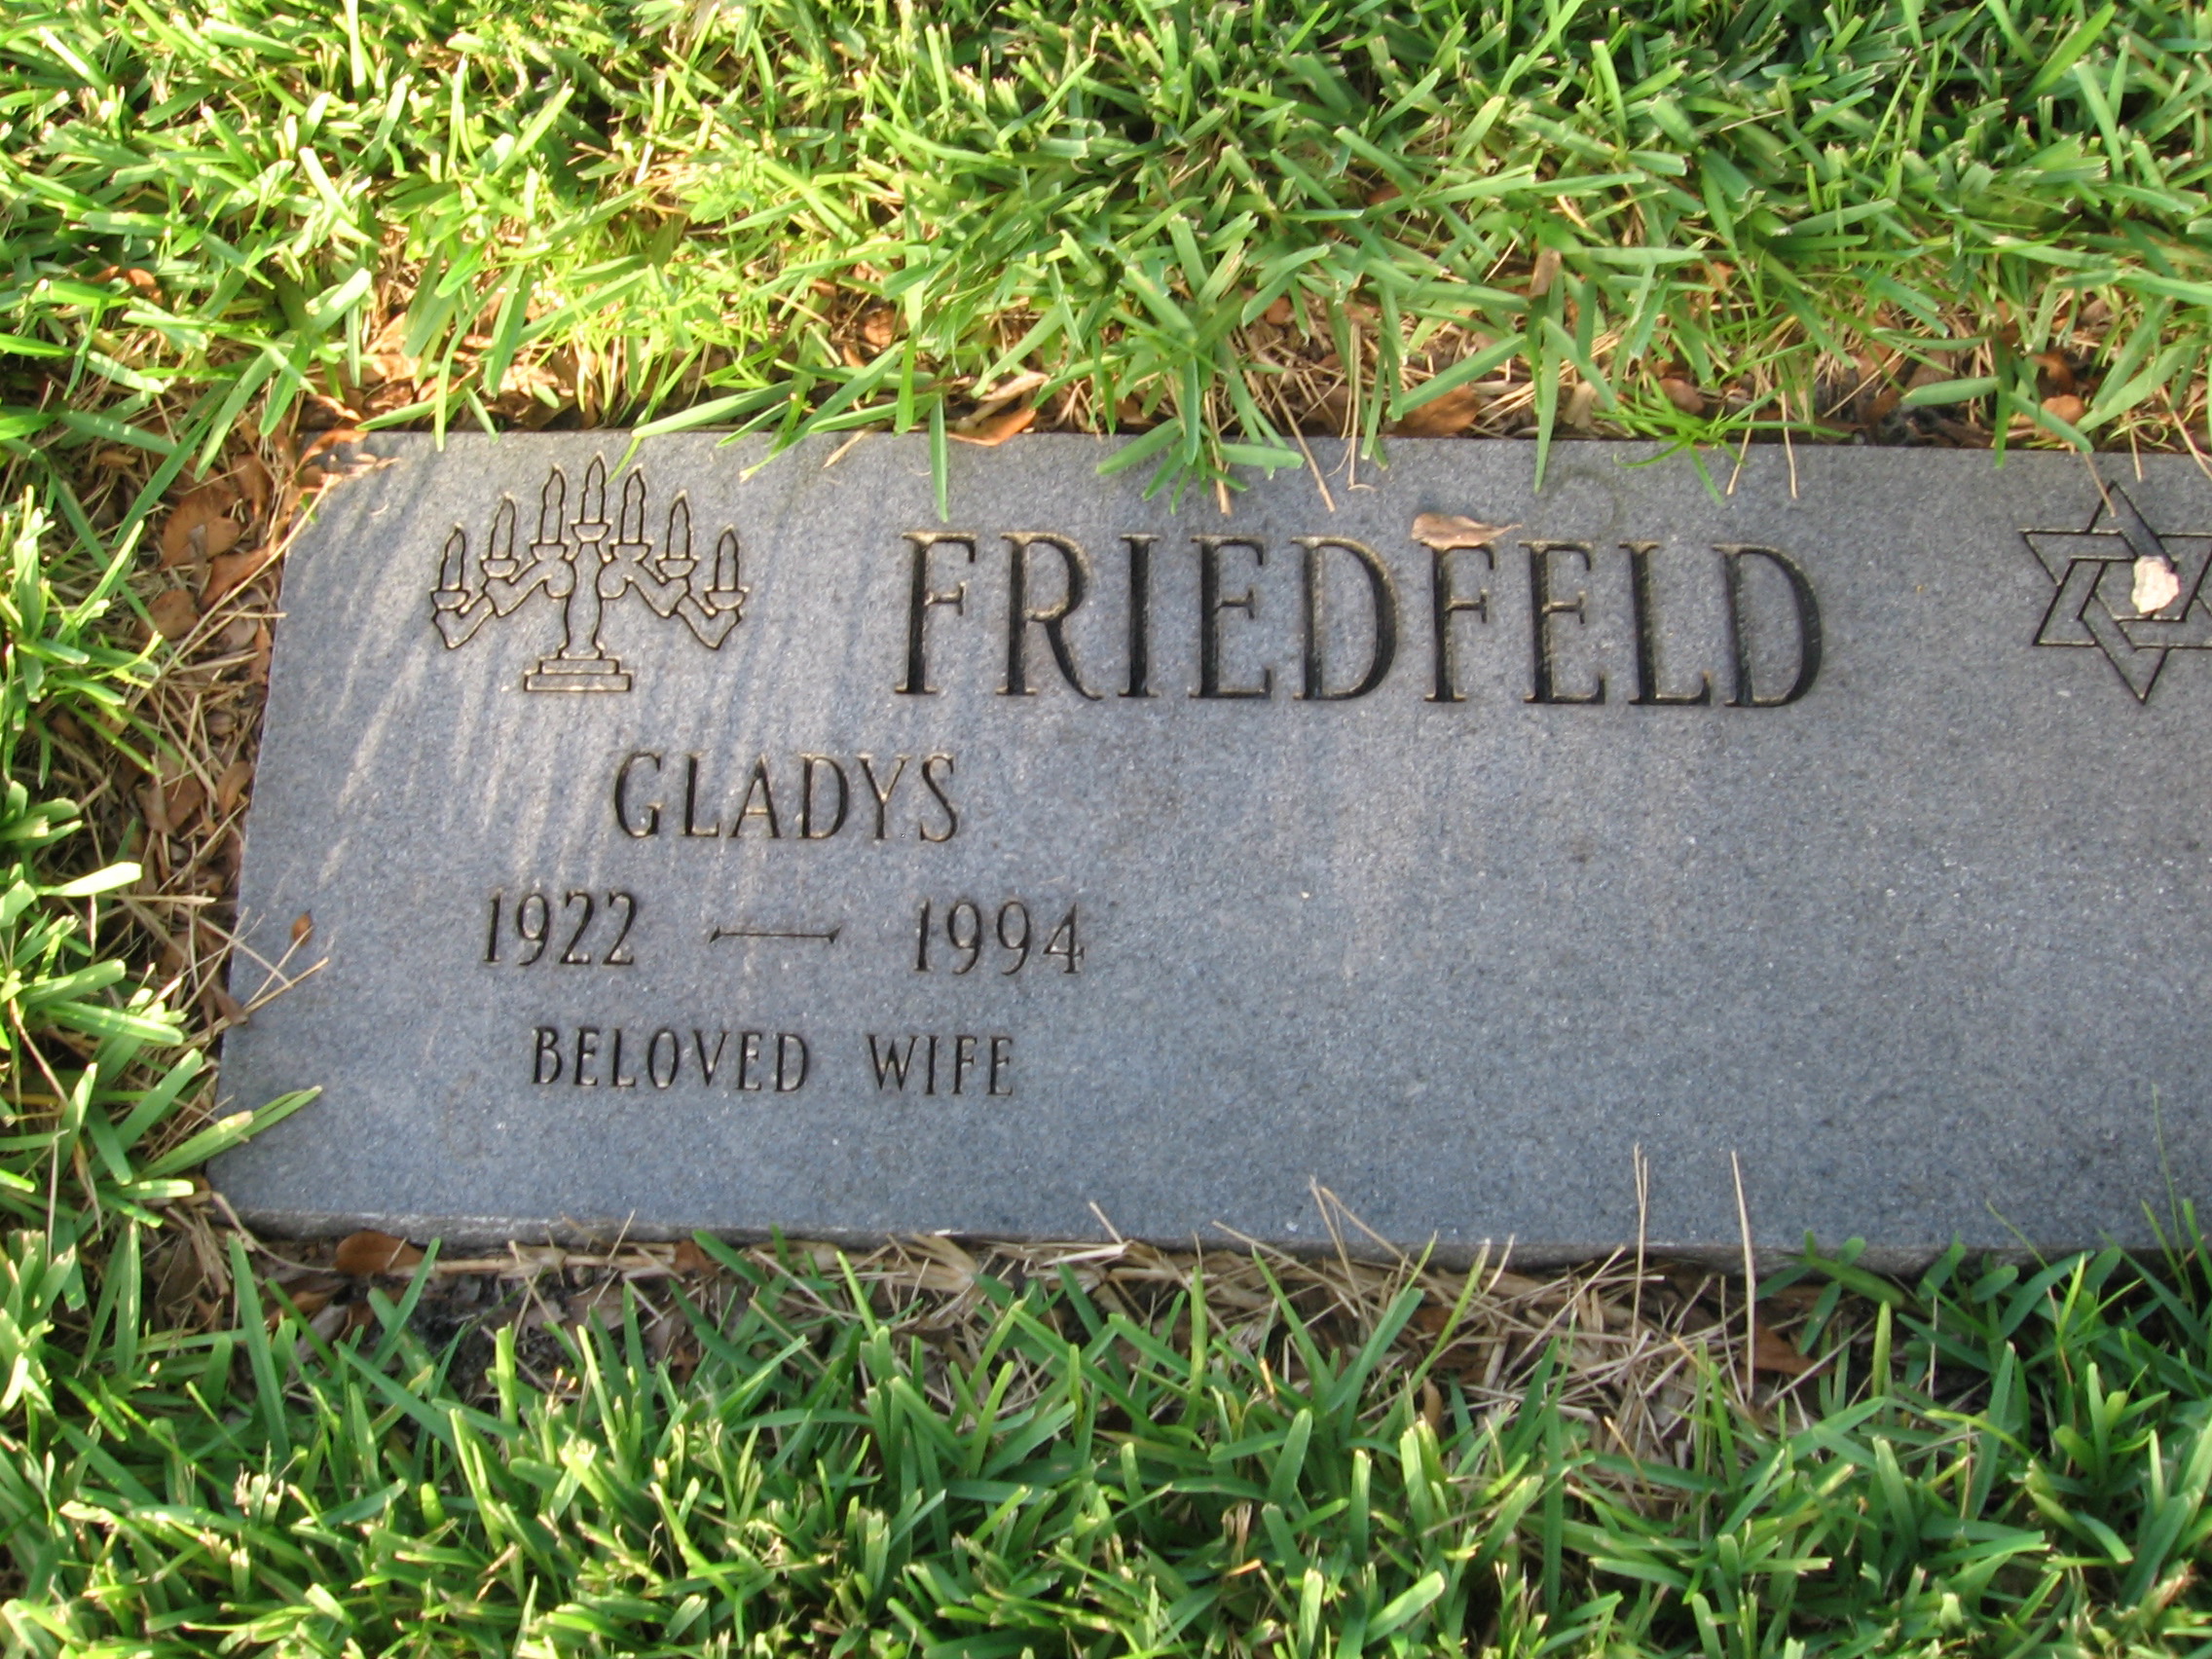 Gladys Friedfeld